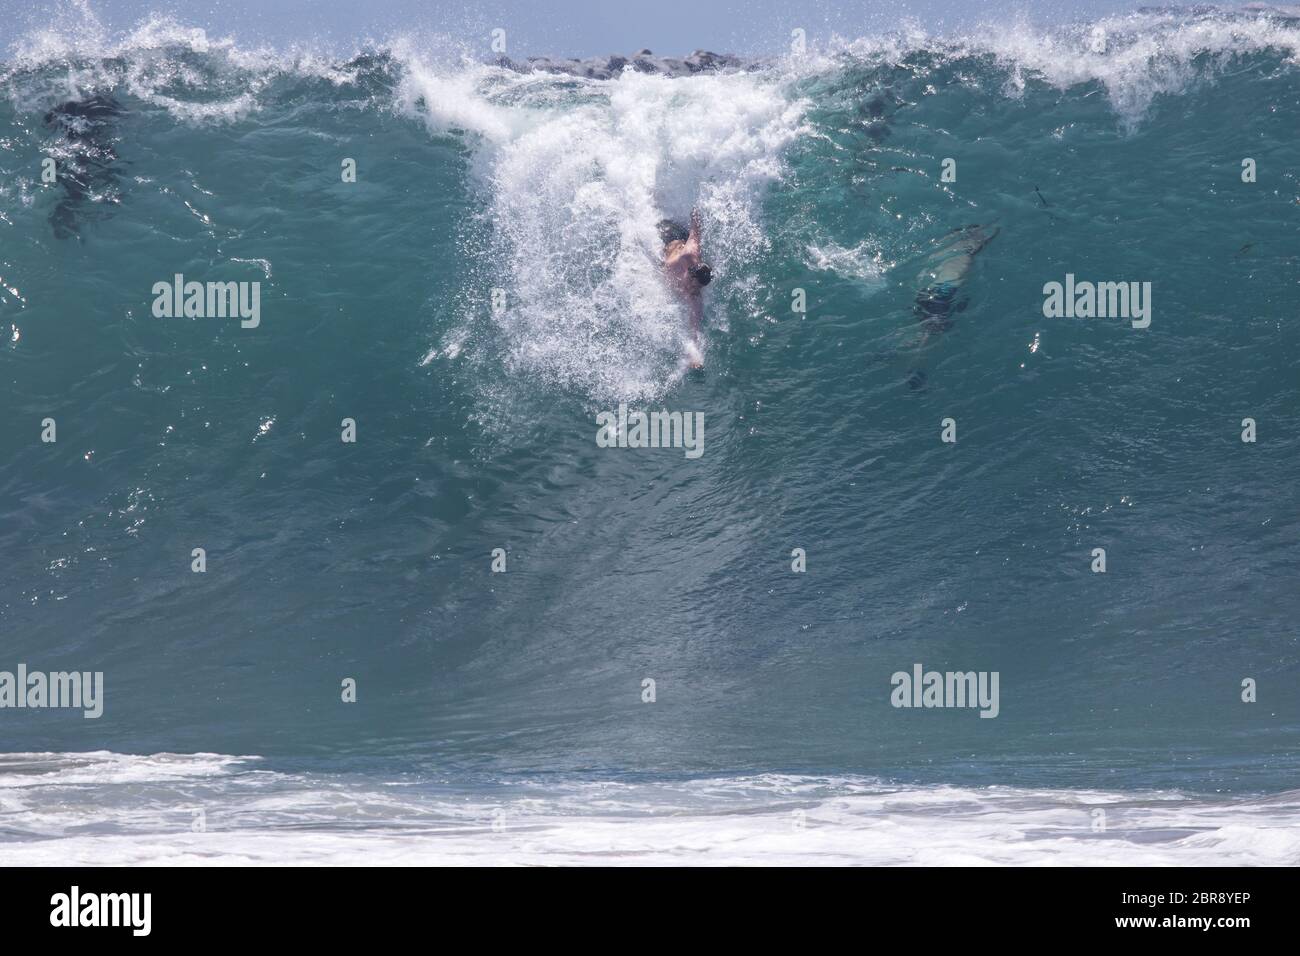 Bodysurfer cavalcare un'onda nella famosa località di bodysurfing The Wedge a Newport Beach, California meridionale Foto Stock